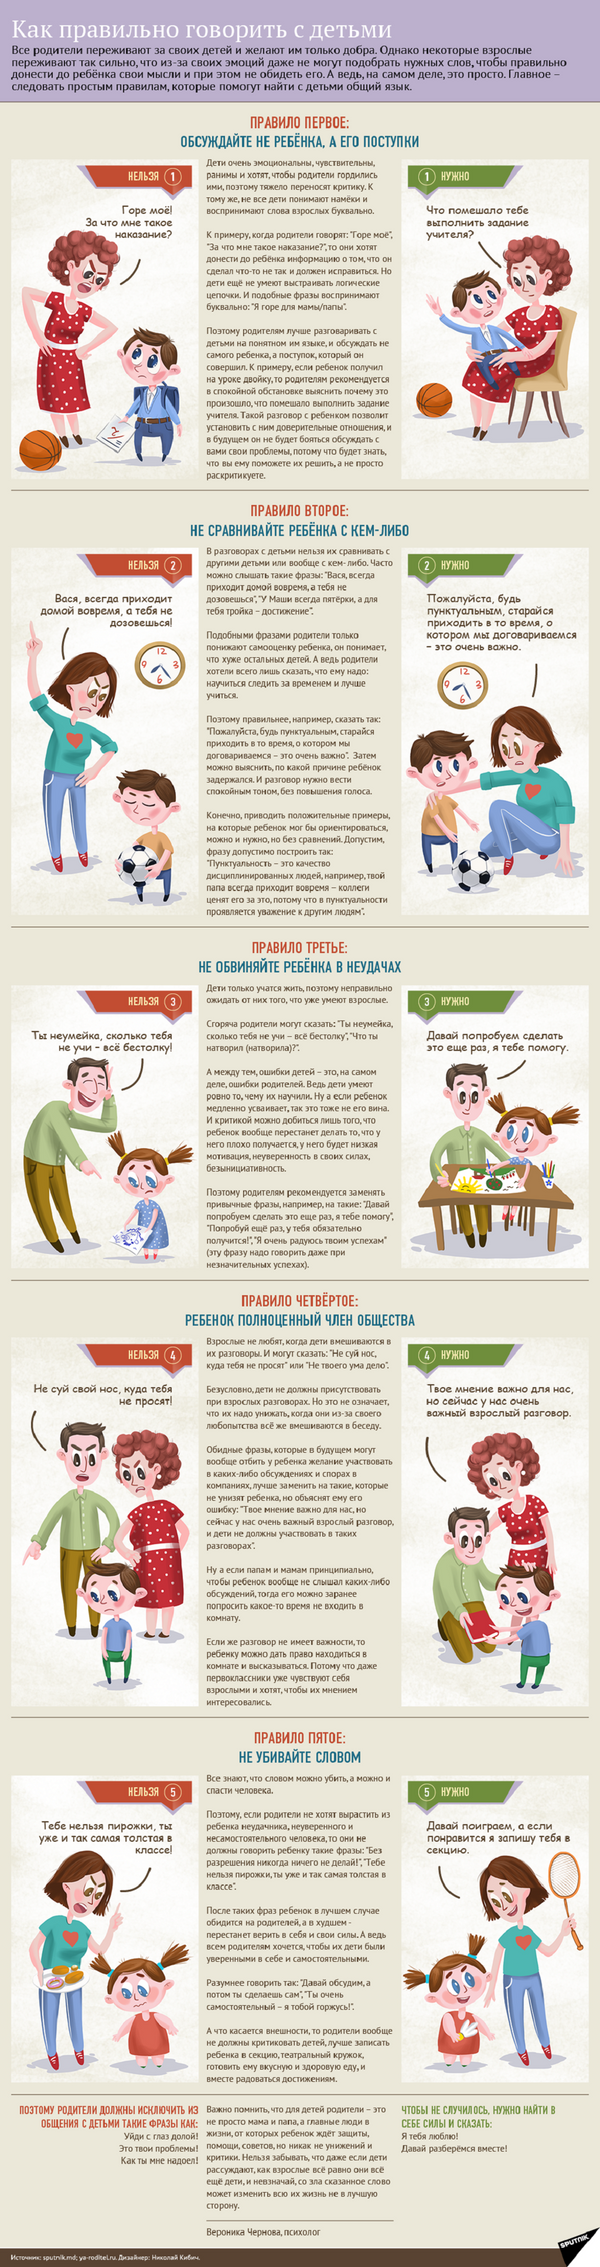 Важные правила для родителей - как найти общий язык с ребенком - Sputnik Абхазия